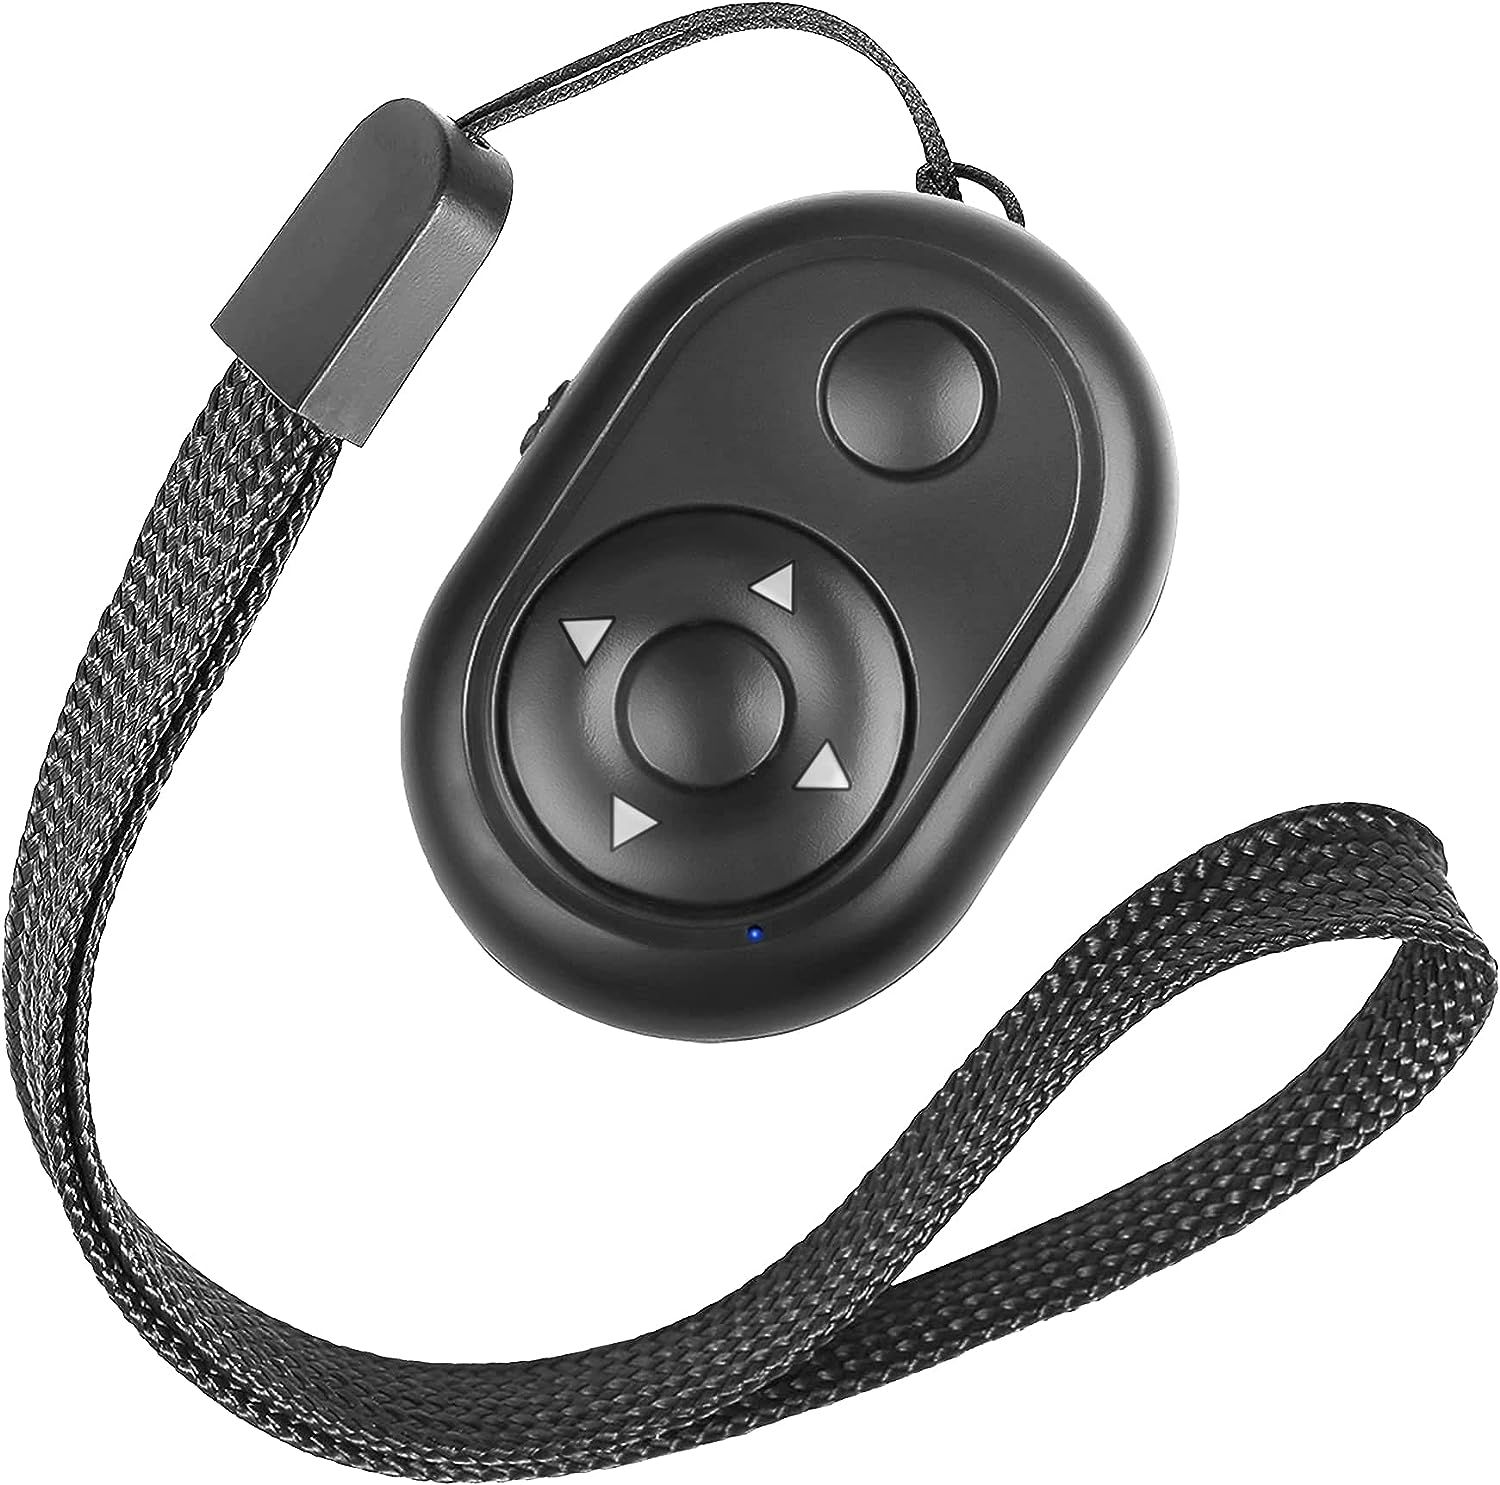 Bluetooth Remote For iPhone Camera & TikTok Remote, Bluetooth Picture Remote Control Shutter/Clic... | Amazon (US)